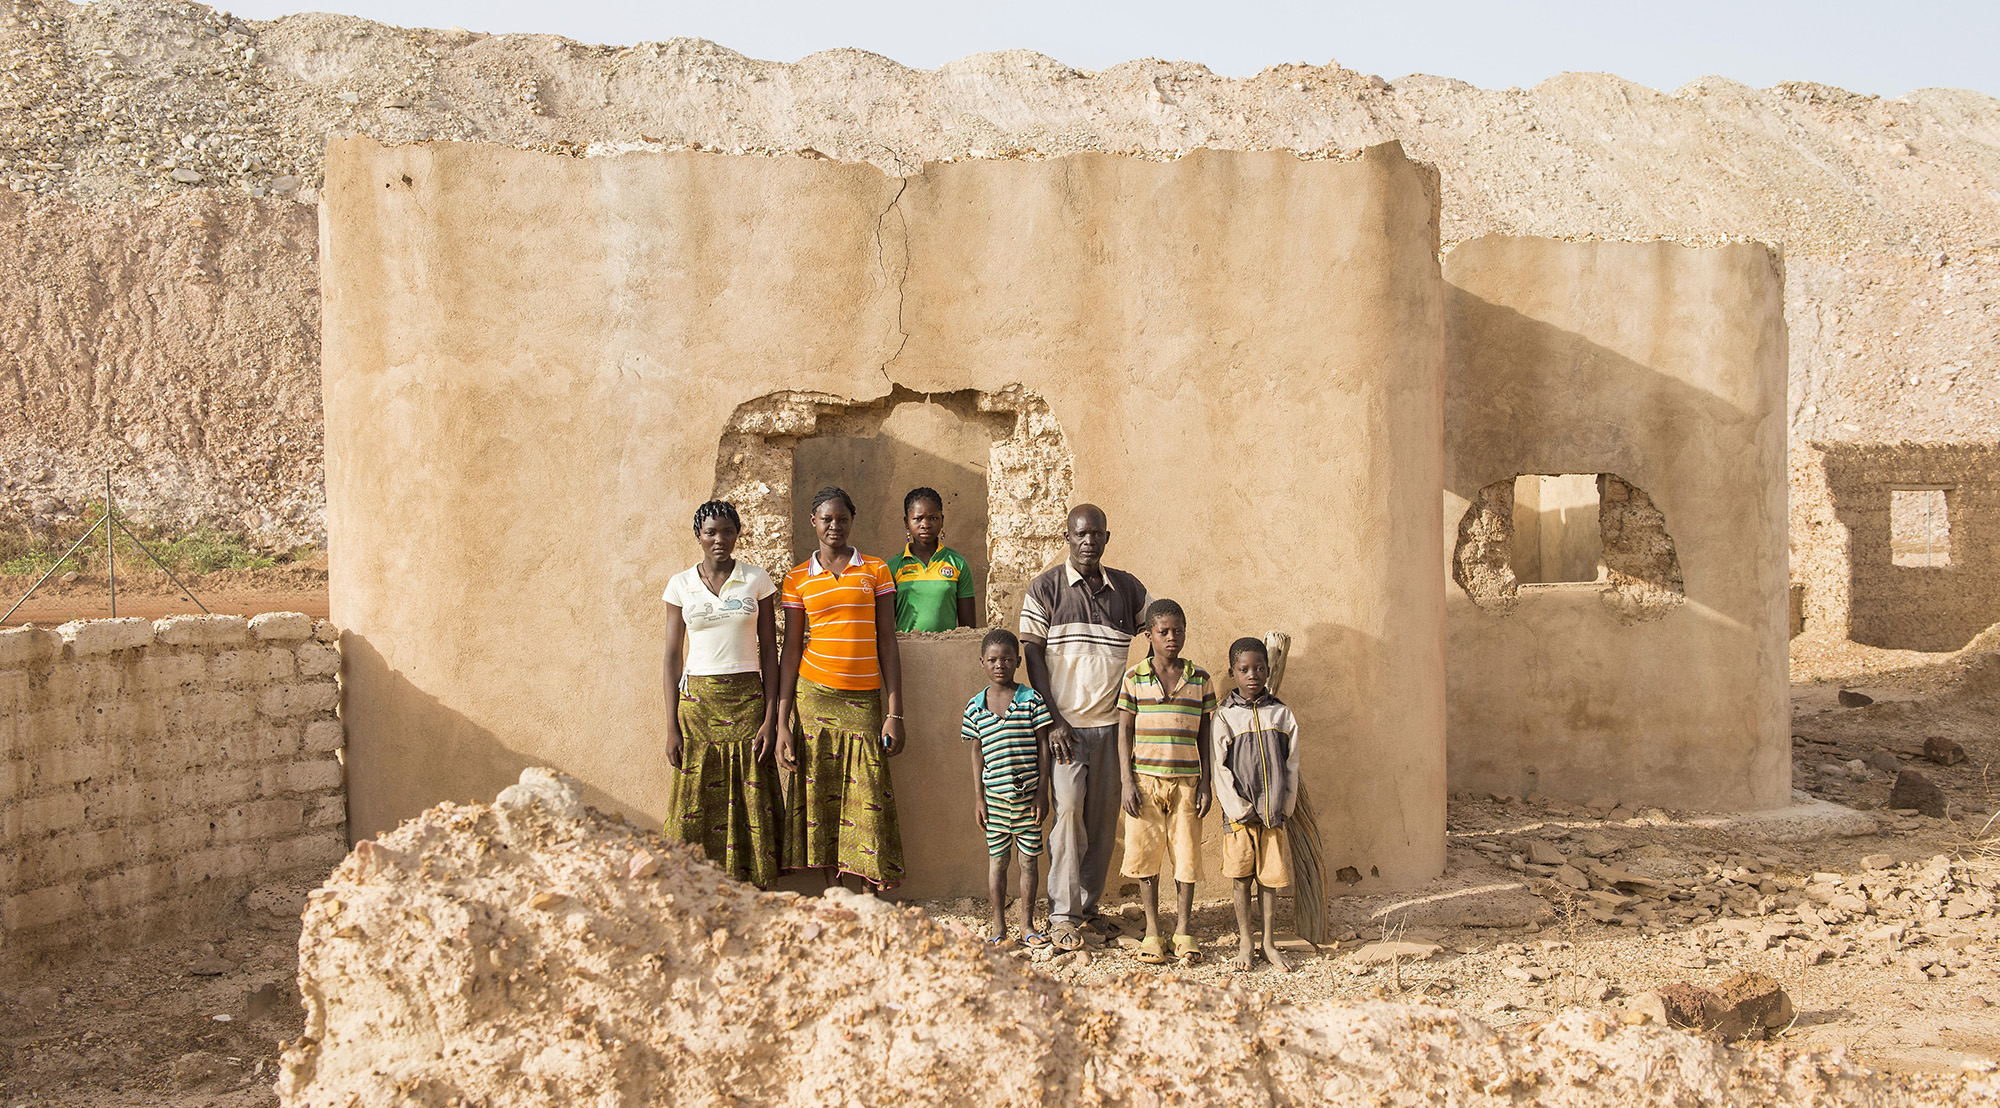 Goldabbau in Burkina Faso: Profit vor Menschenrechte?